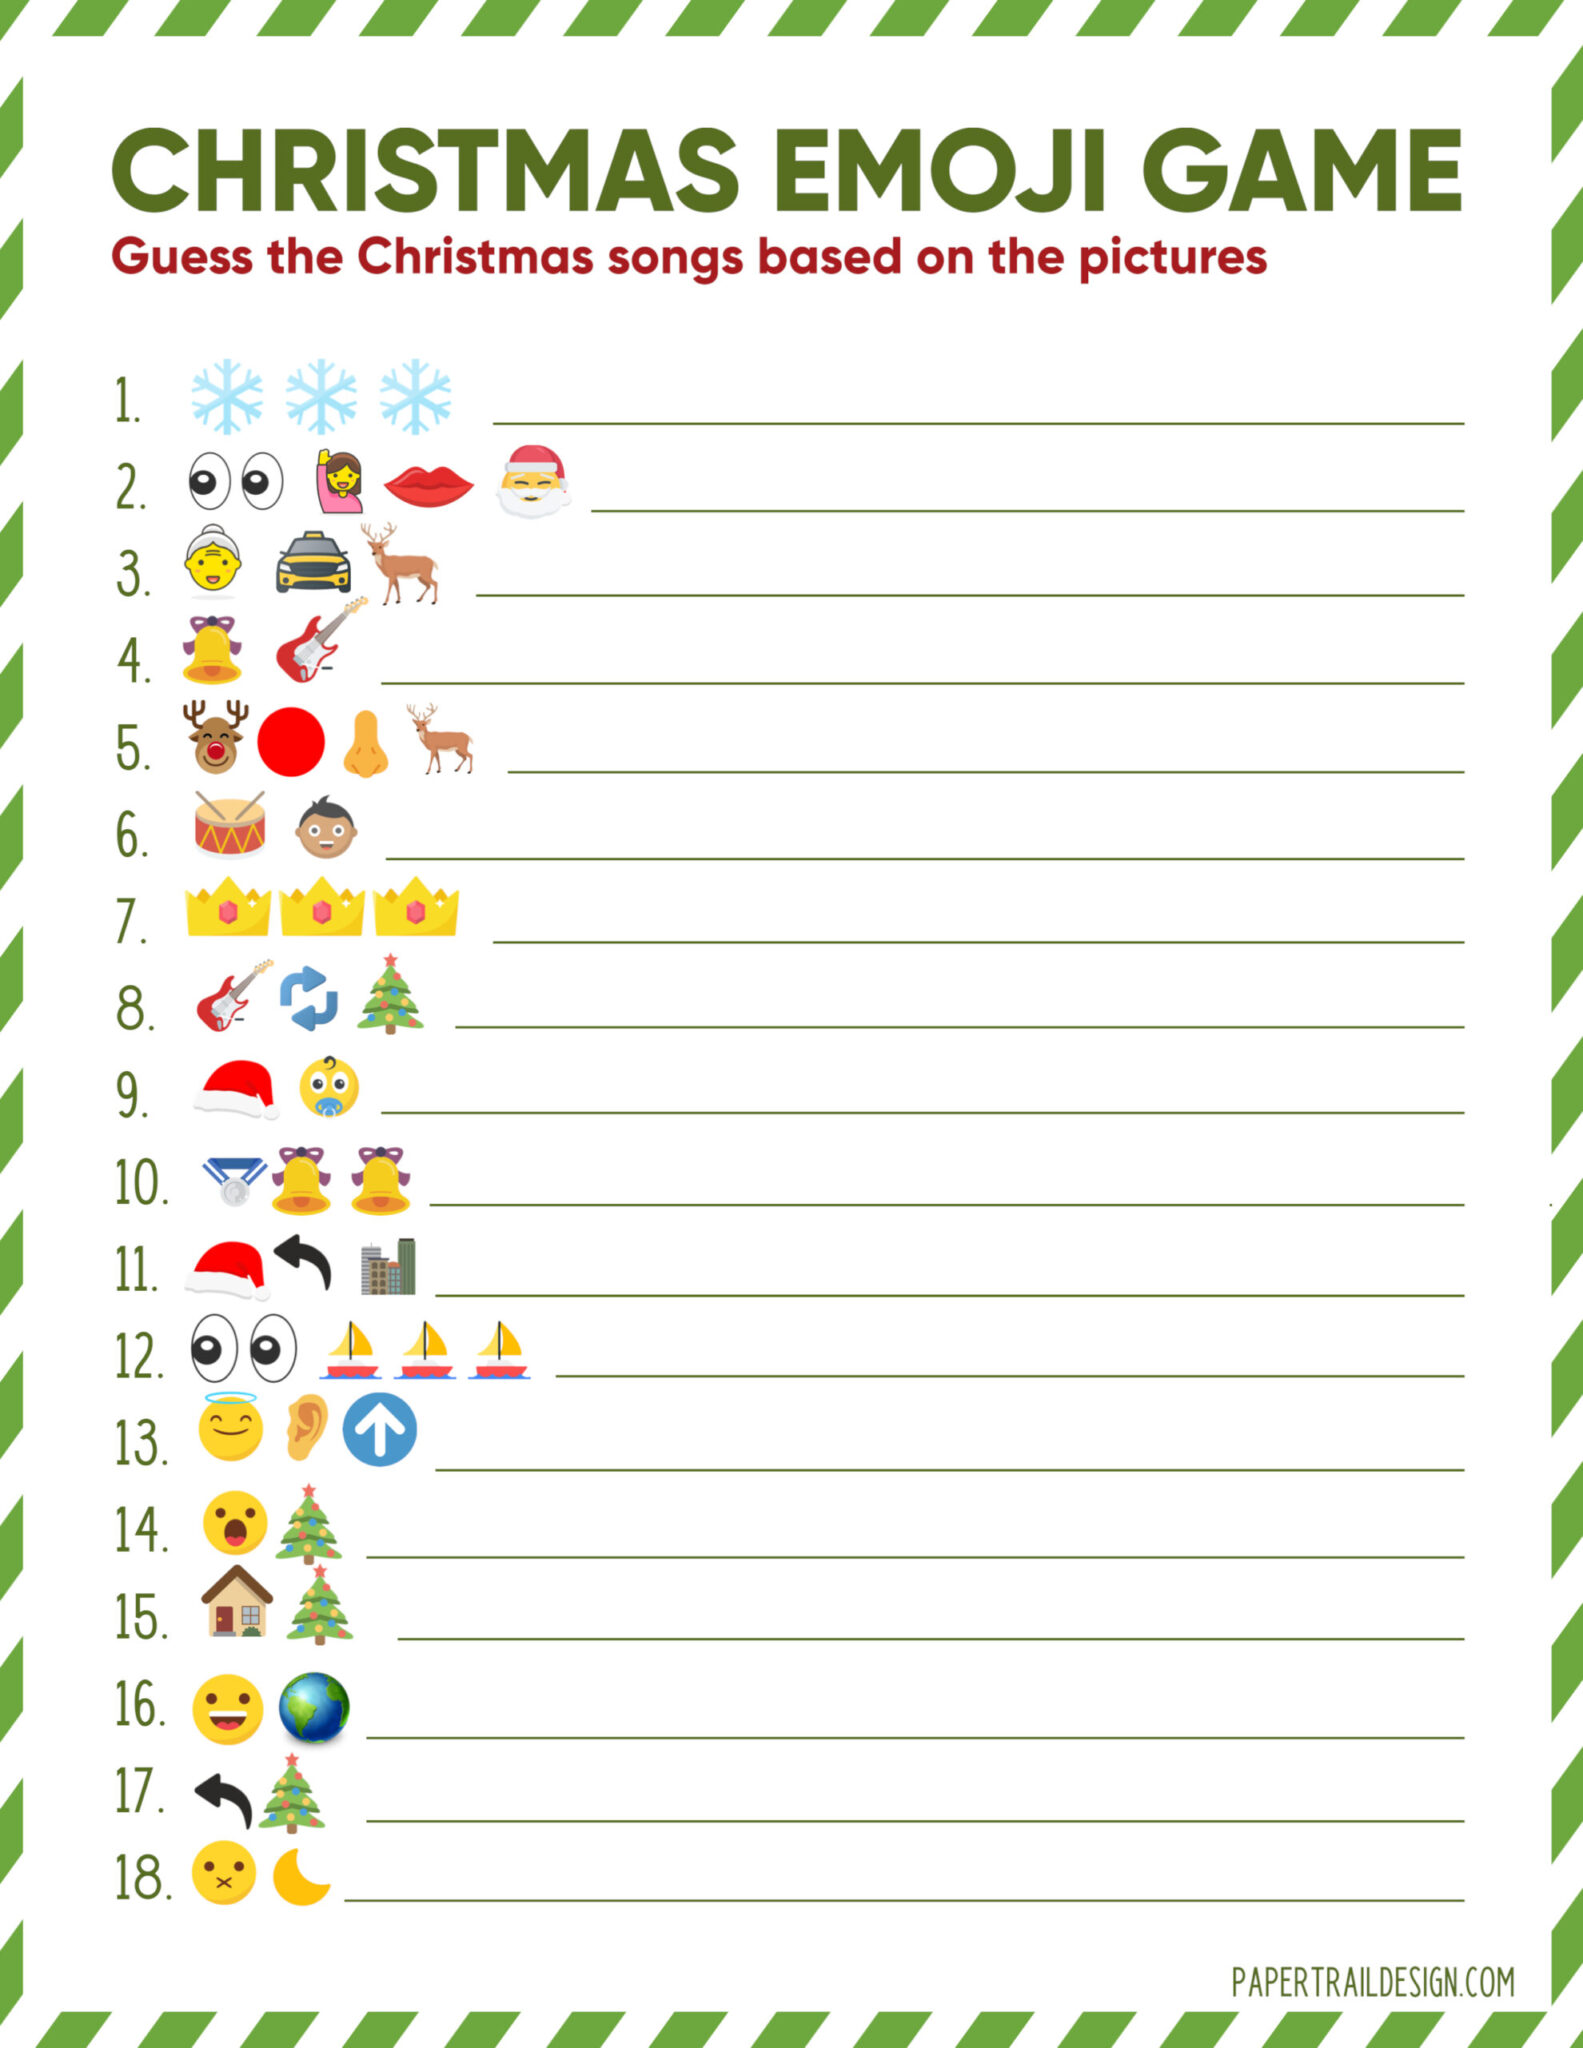 free-printable-christmas-emoji-game-printable-world-holiday